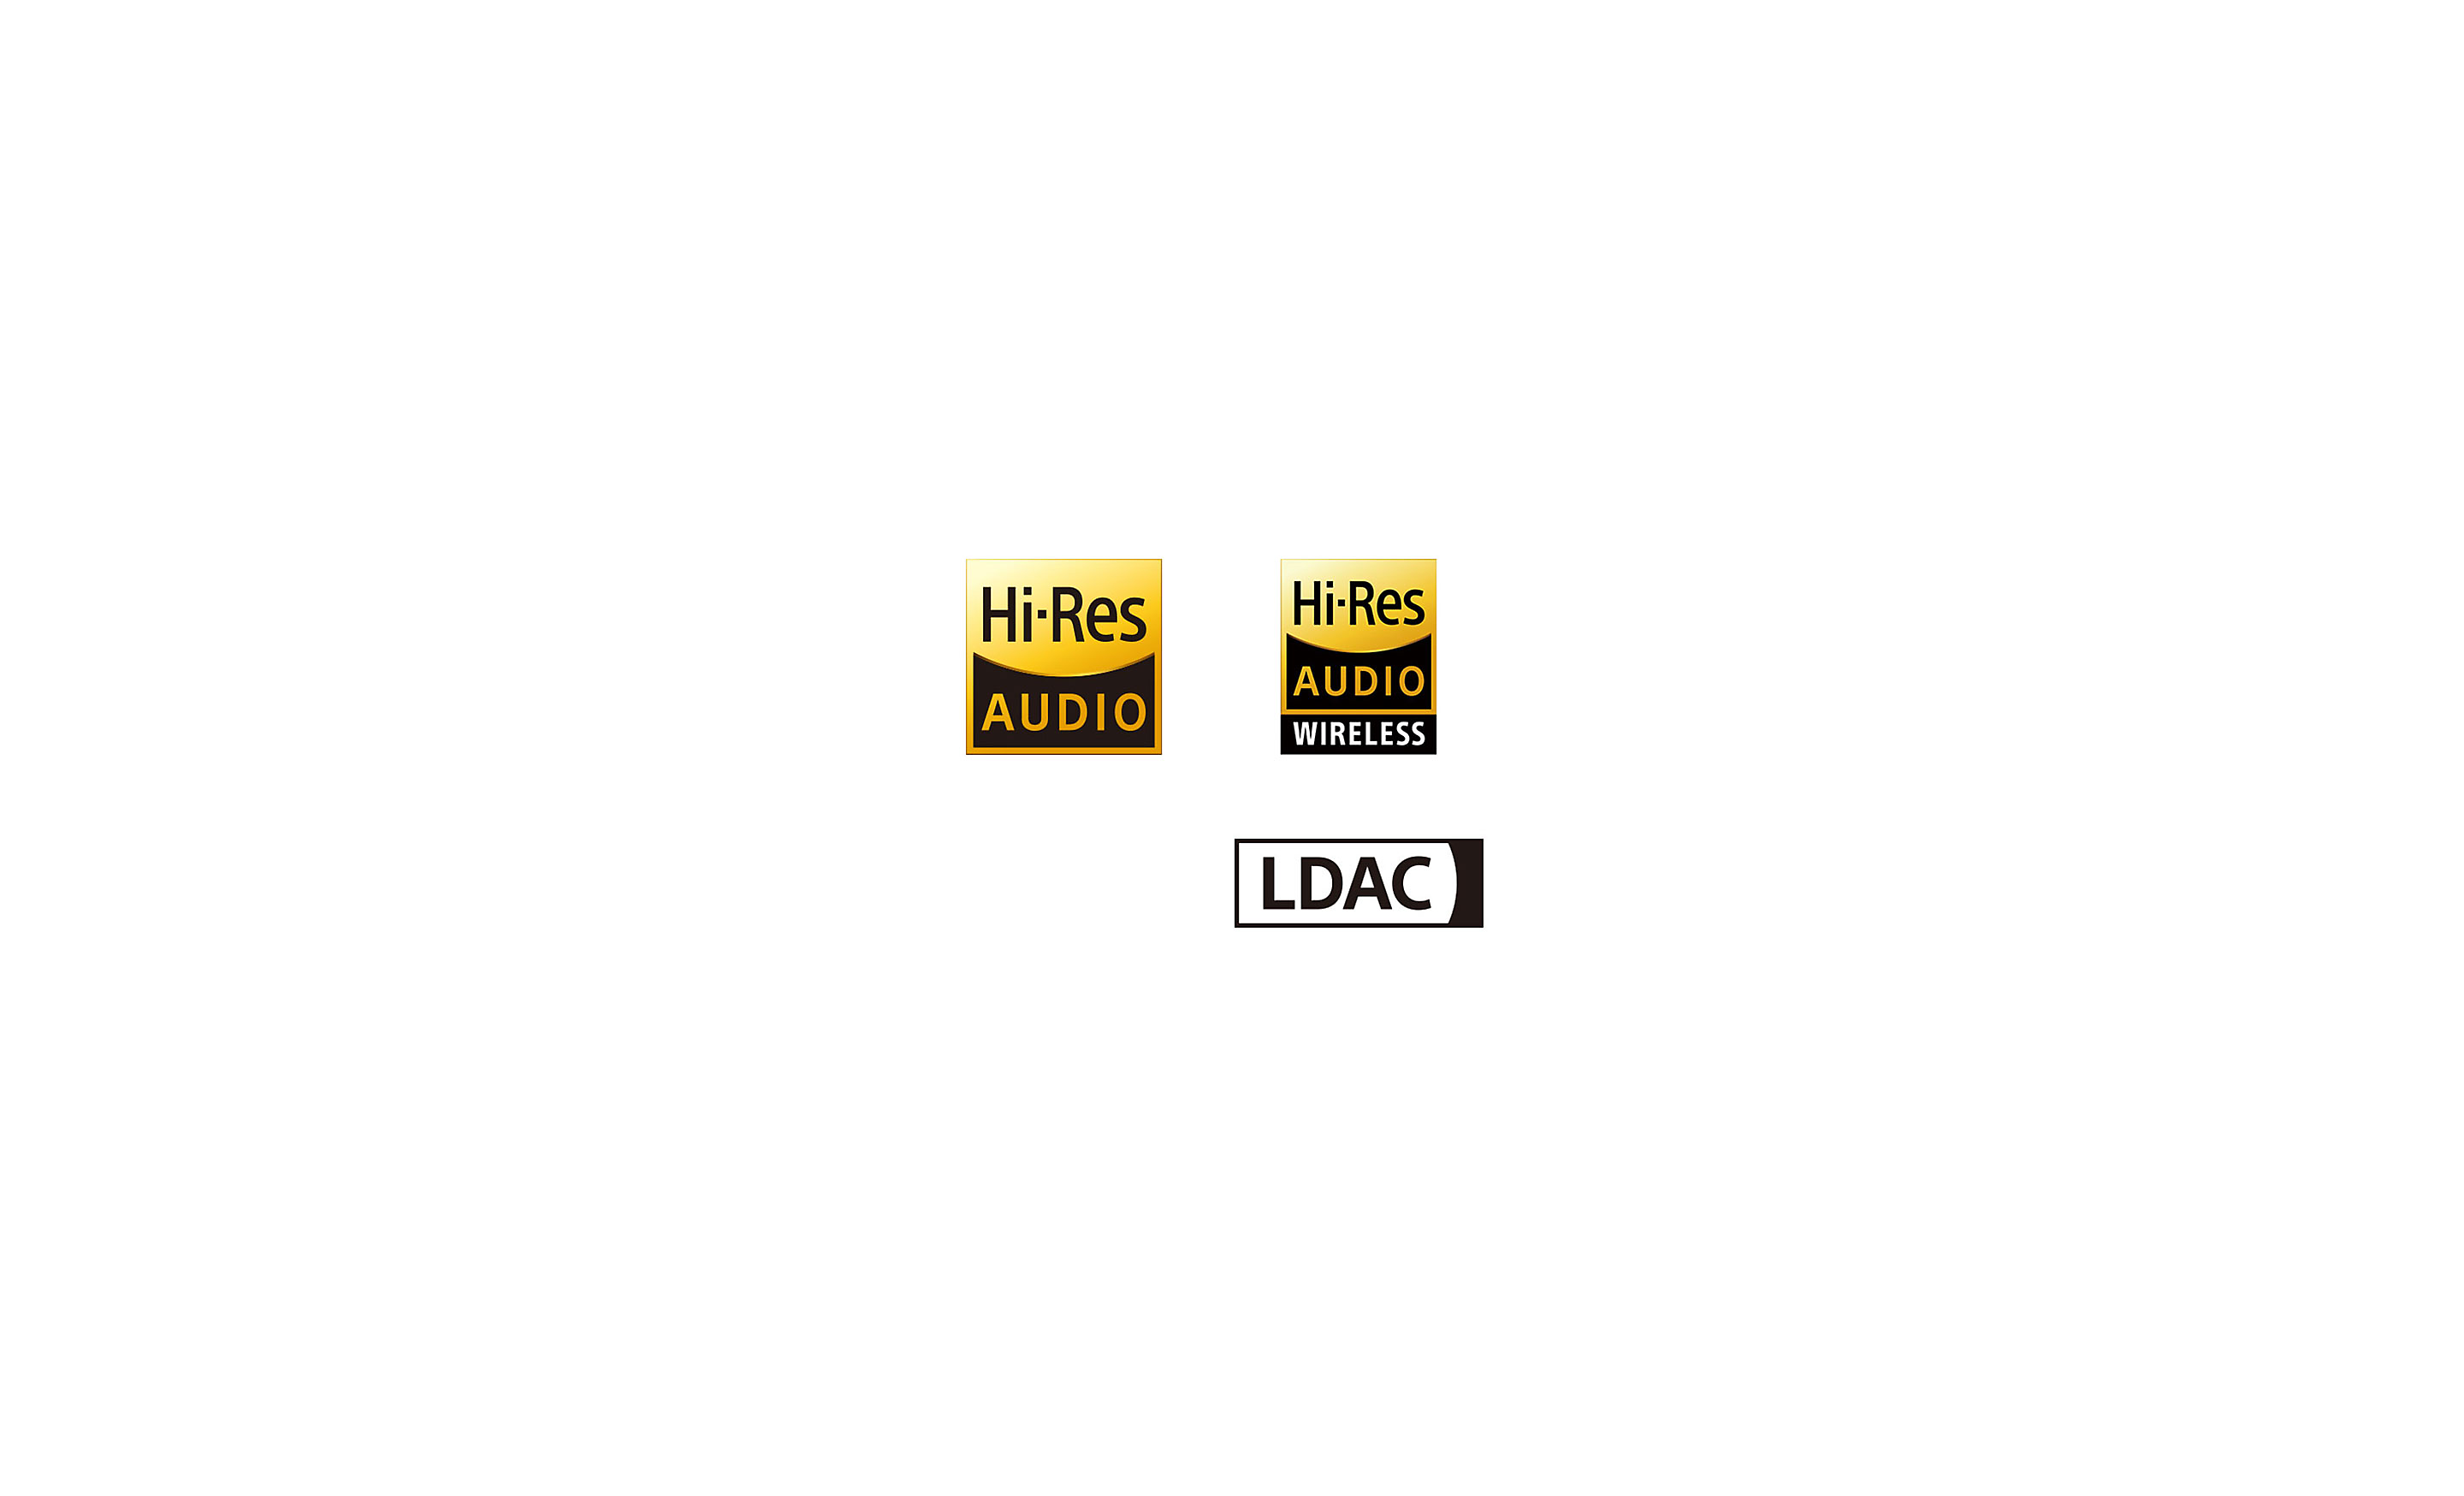 Λογότυπα ήχου υψηλής ανάλυσης, ασύρματου ήχου υψηλής ανάλυσης και LDAC.